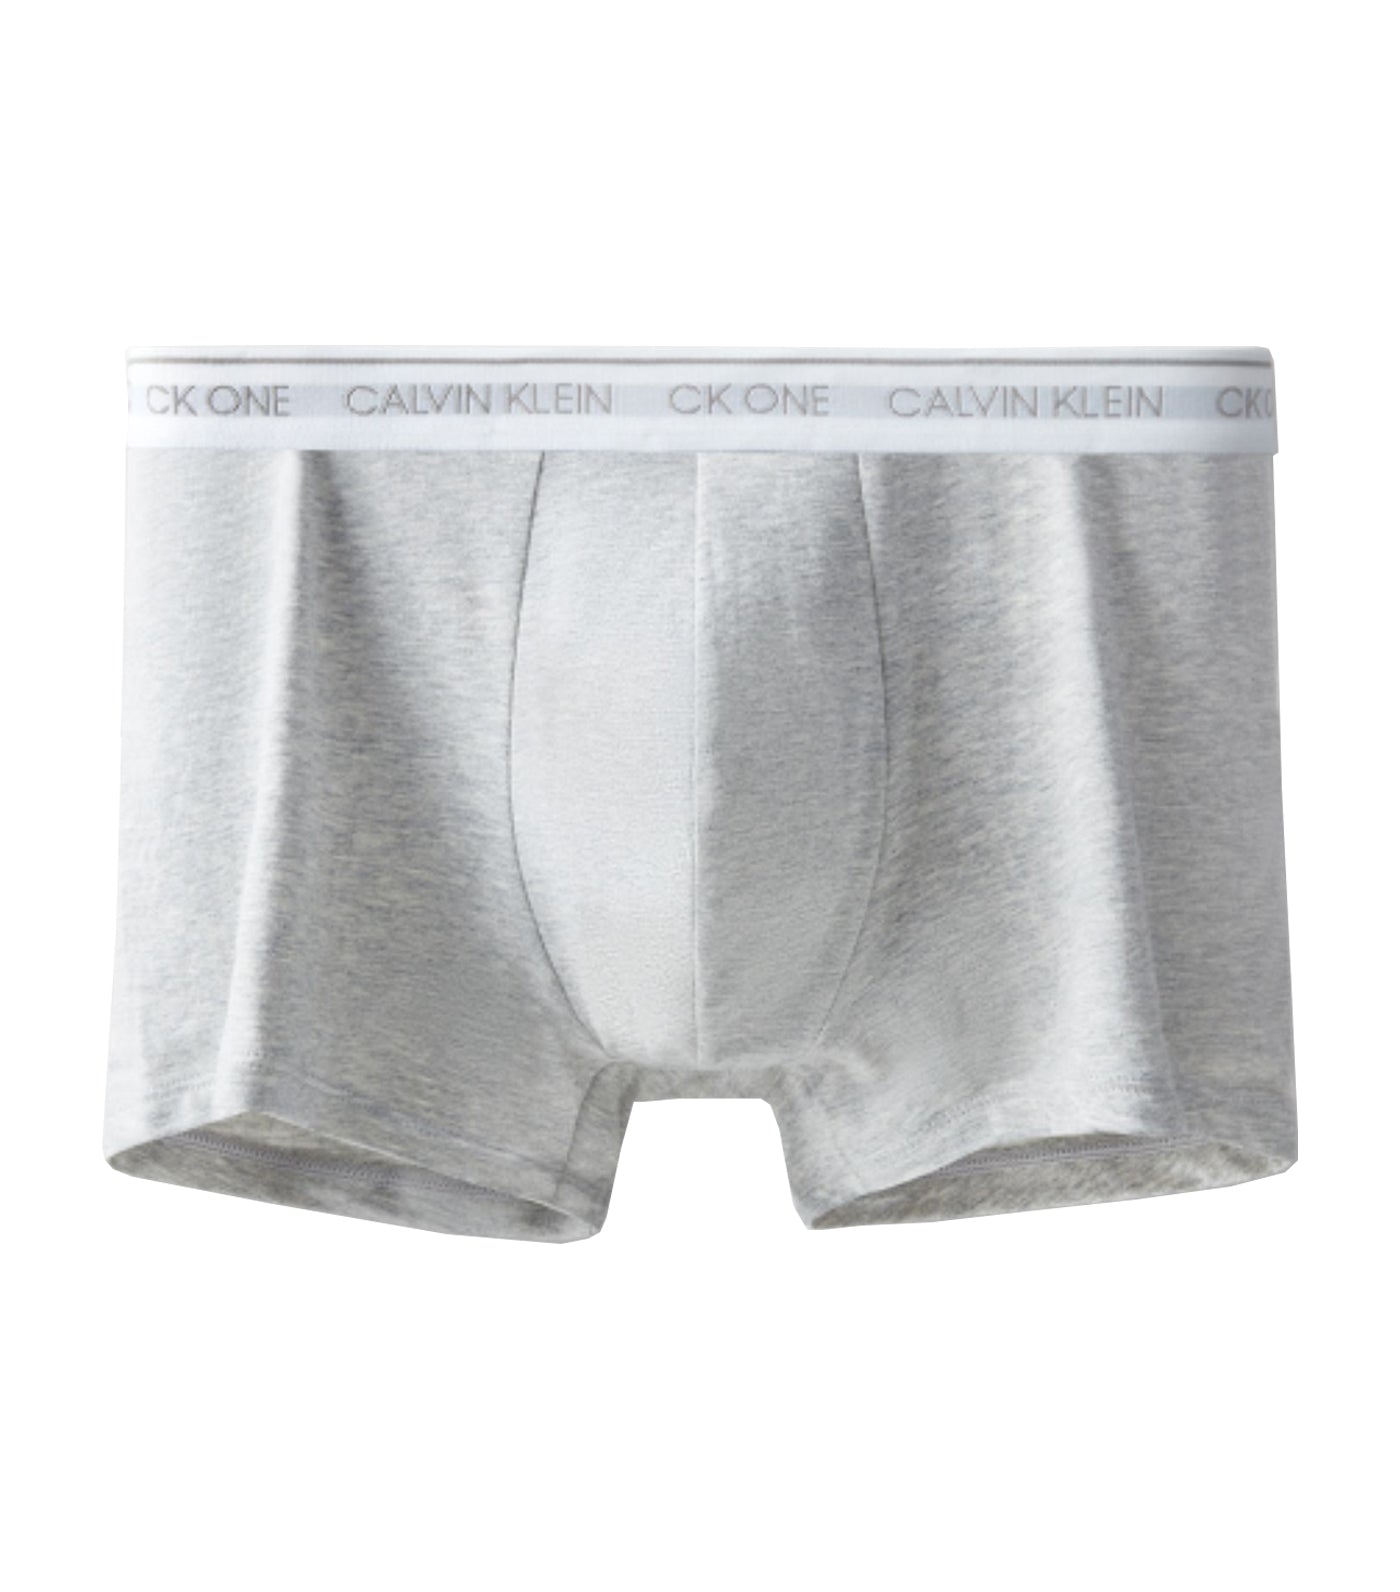 Calvin Klein Underwear One Cotton … curated on LTK